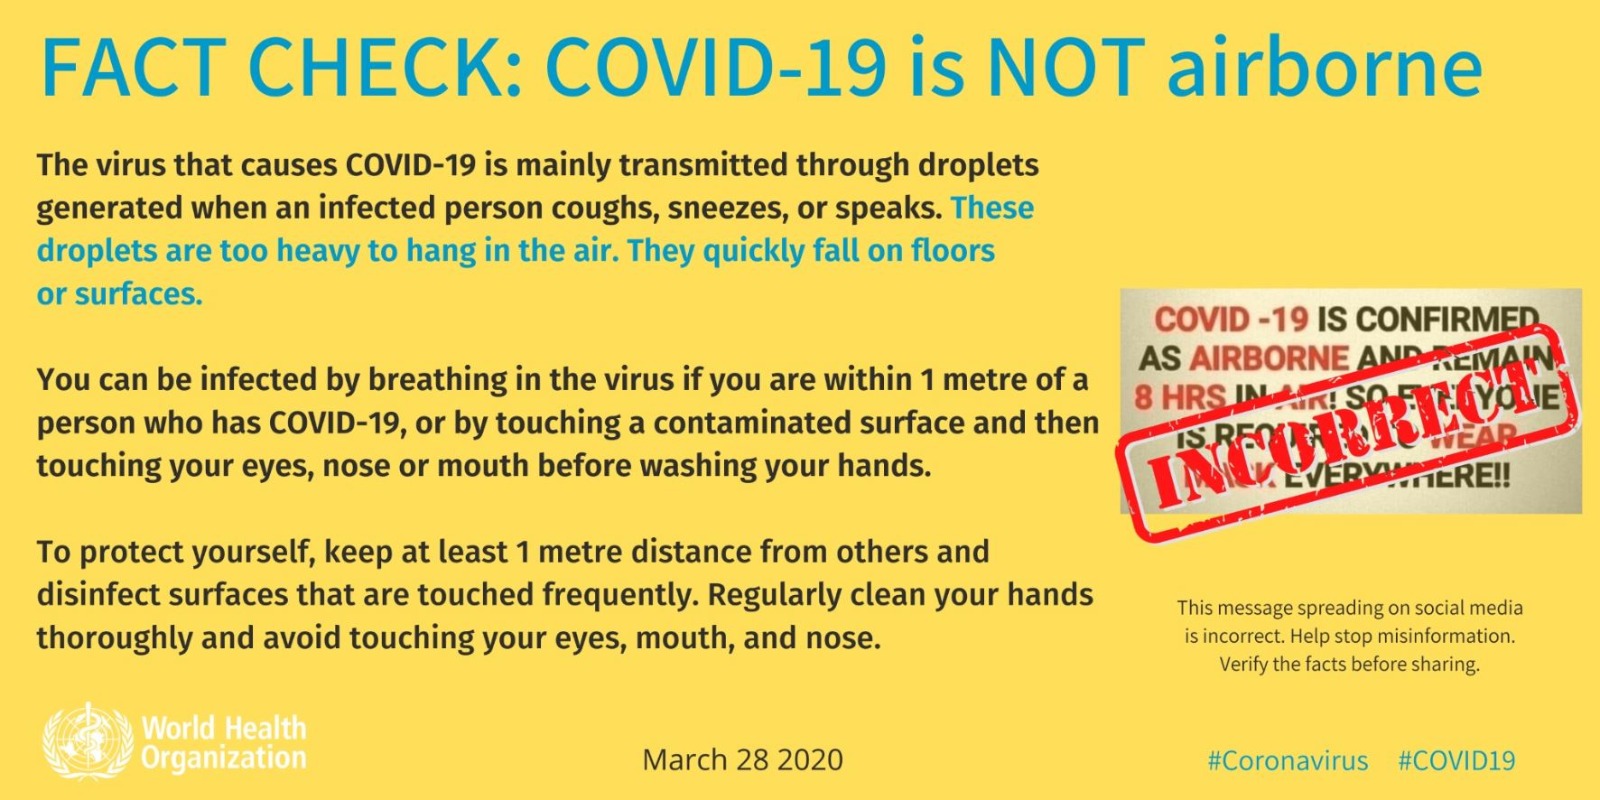 dso-koronavirus-hava-yoluyla-bulasmiyor-4988-dhaphoto1.jpg